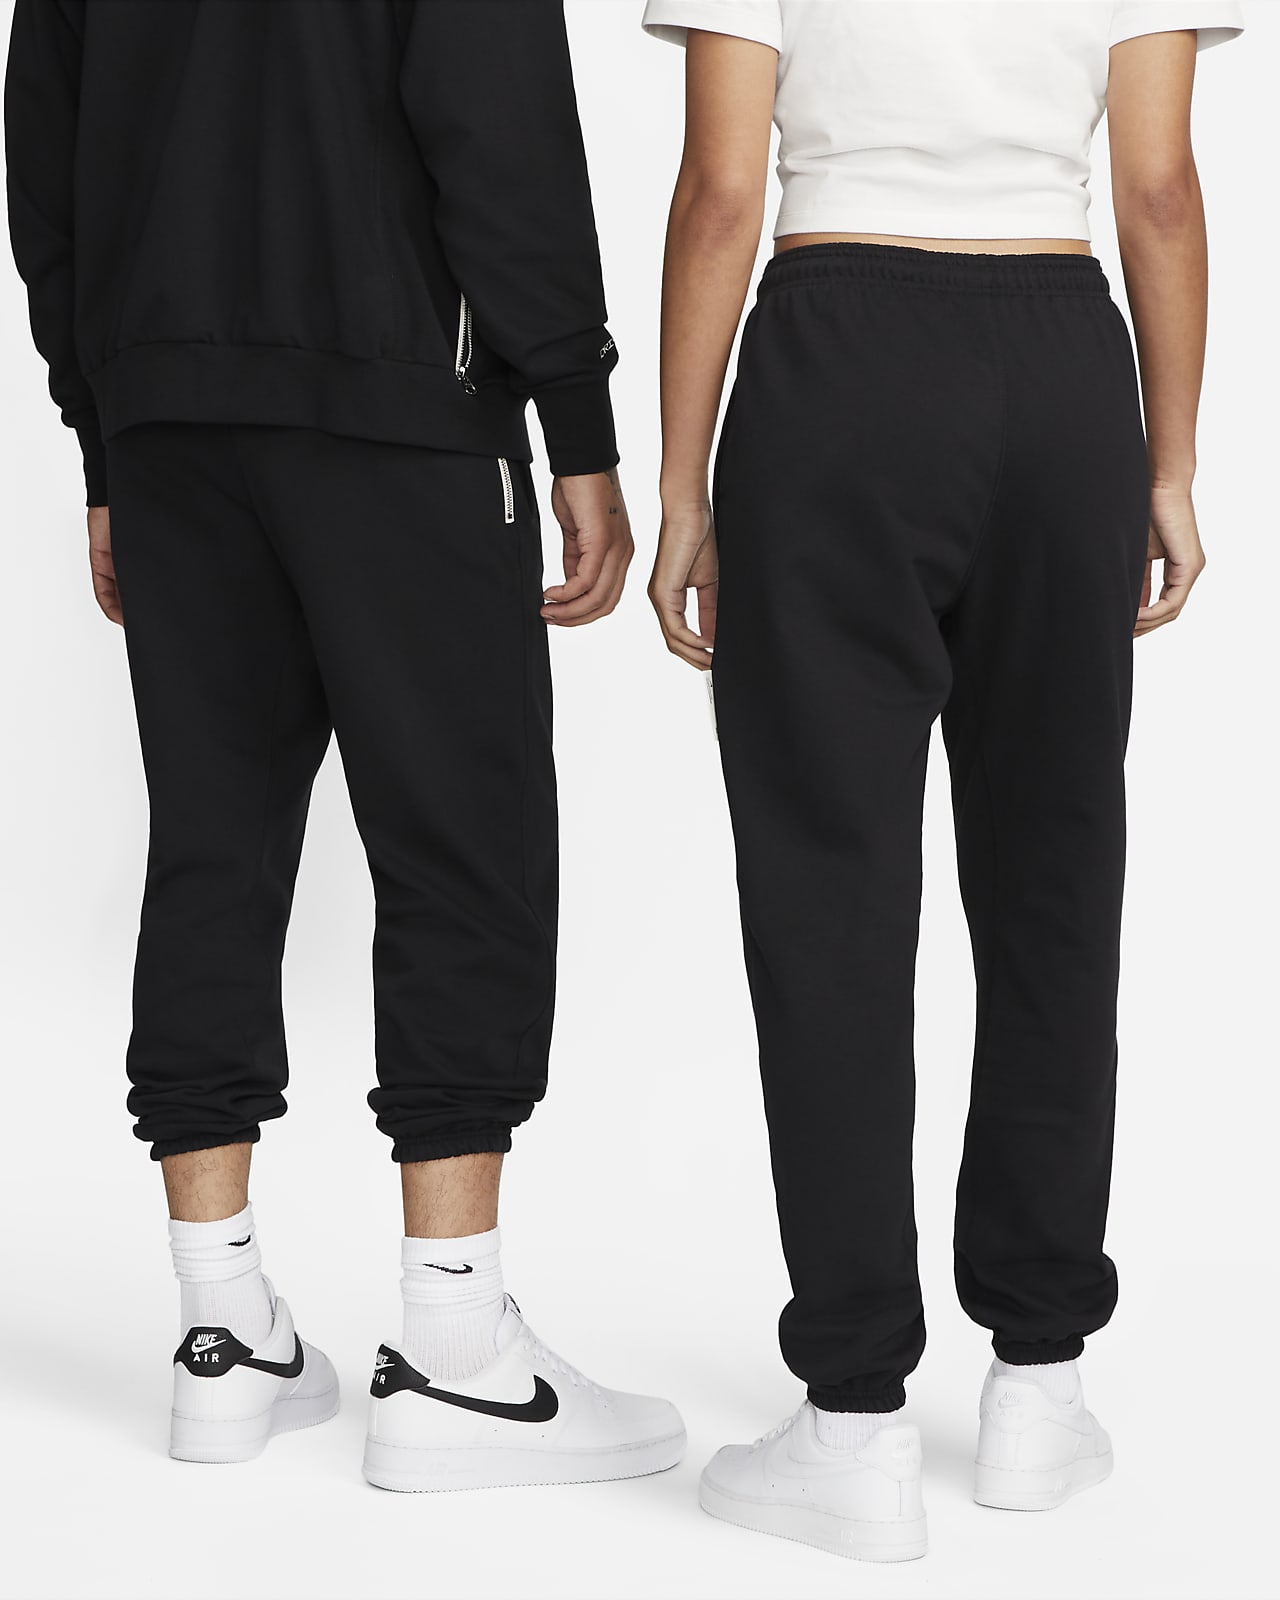 New Nike Dri Fit Black Joggers Jogging Pants Standard Fit